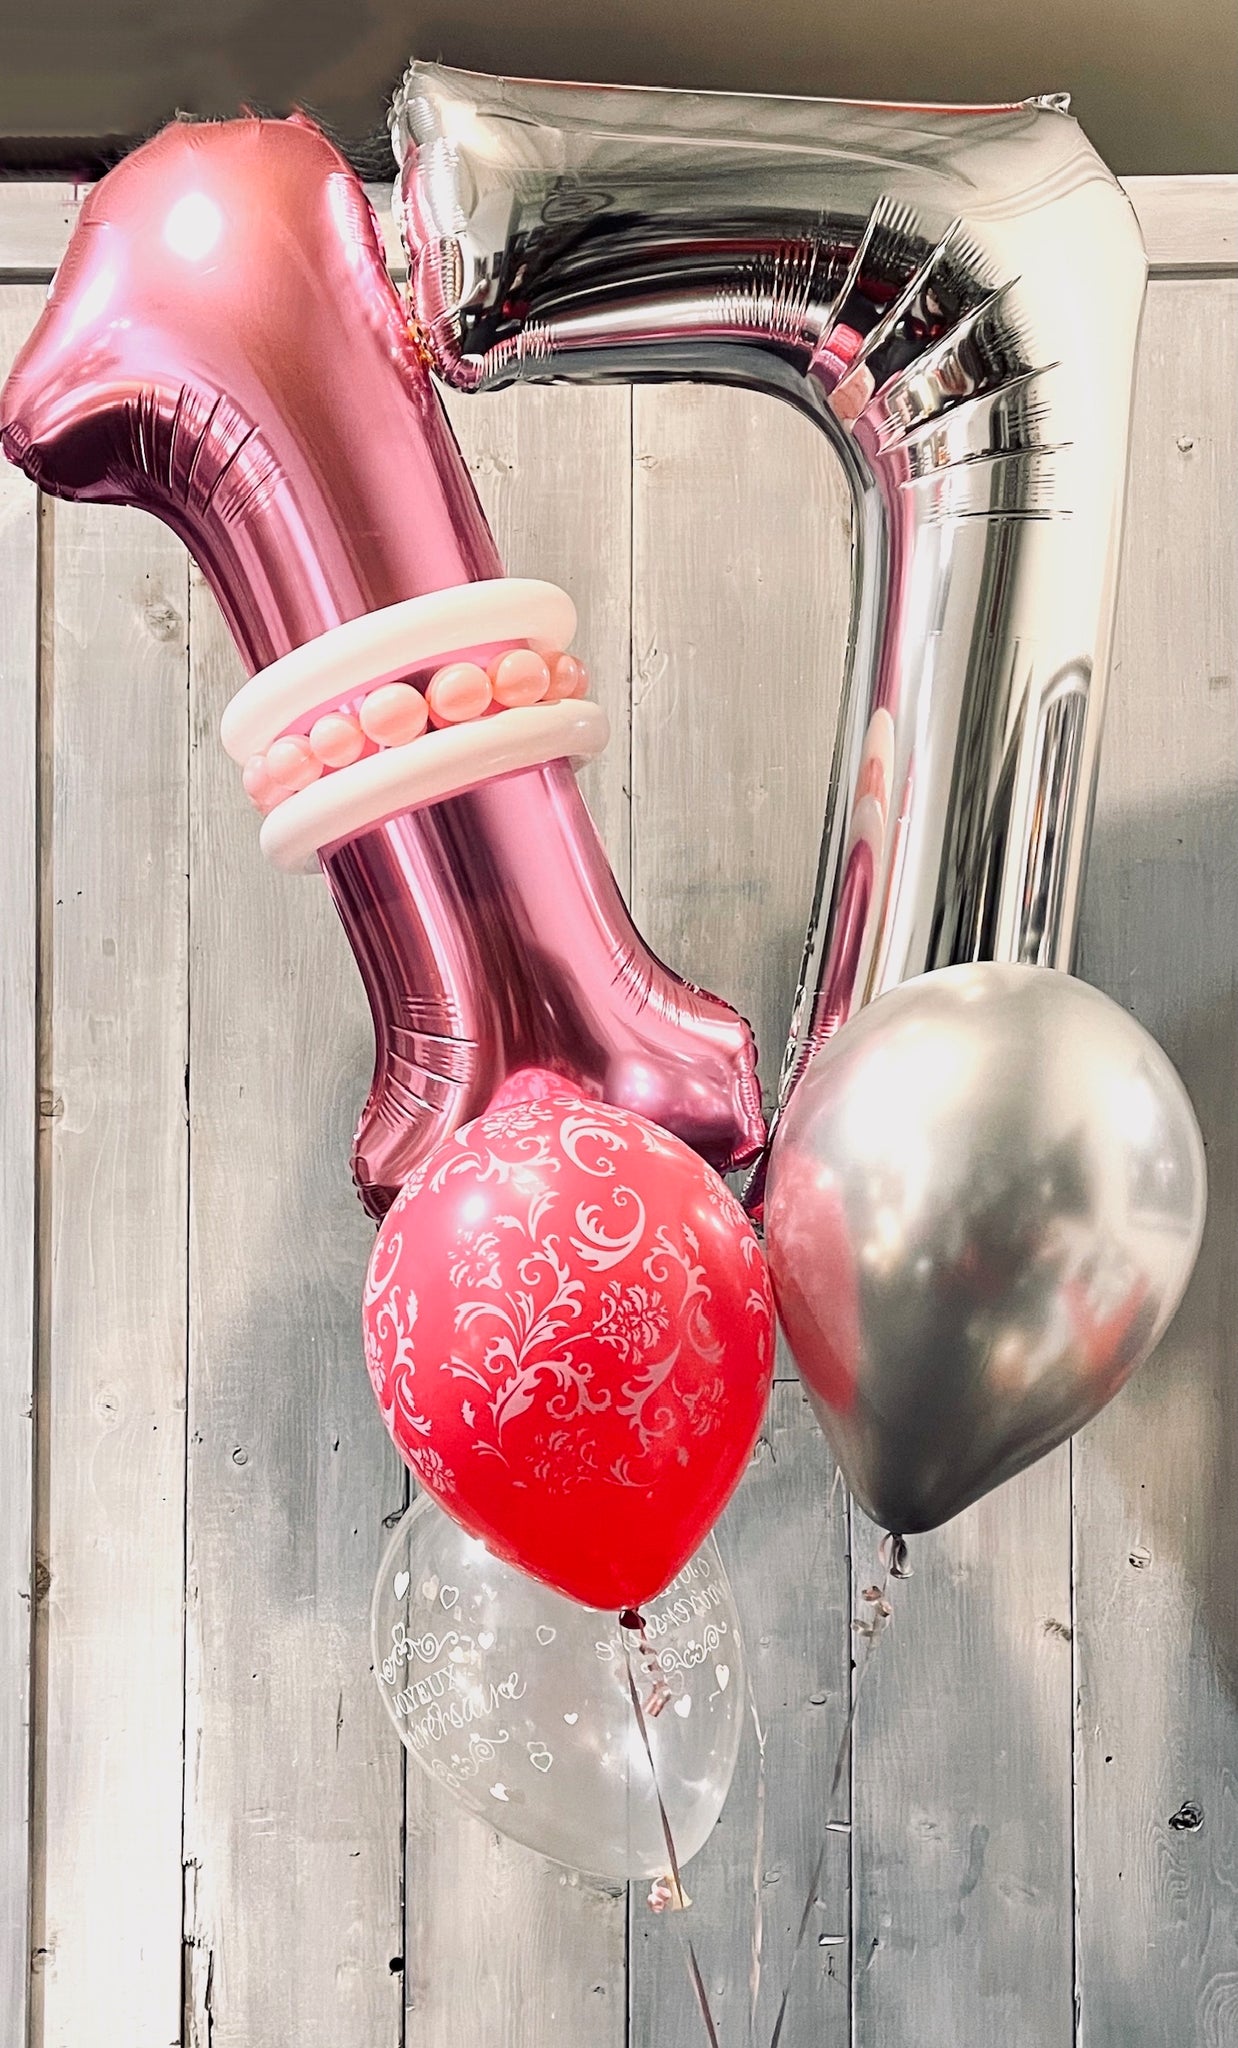 Bonne Typographie De La Saint-valentin Sur Un Ballon D'amour. Ballons D' amour Colorés Sur Fond Rose.